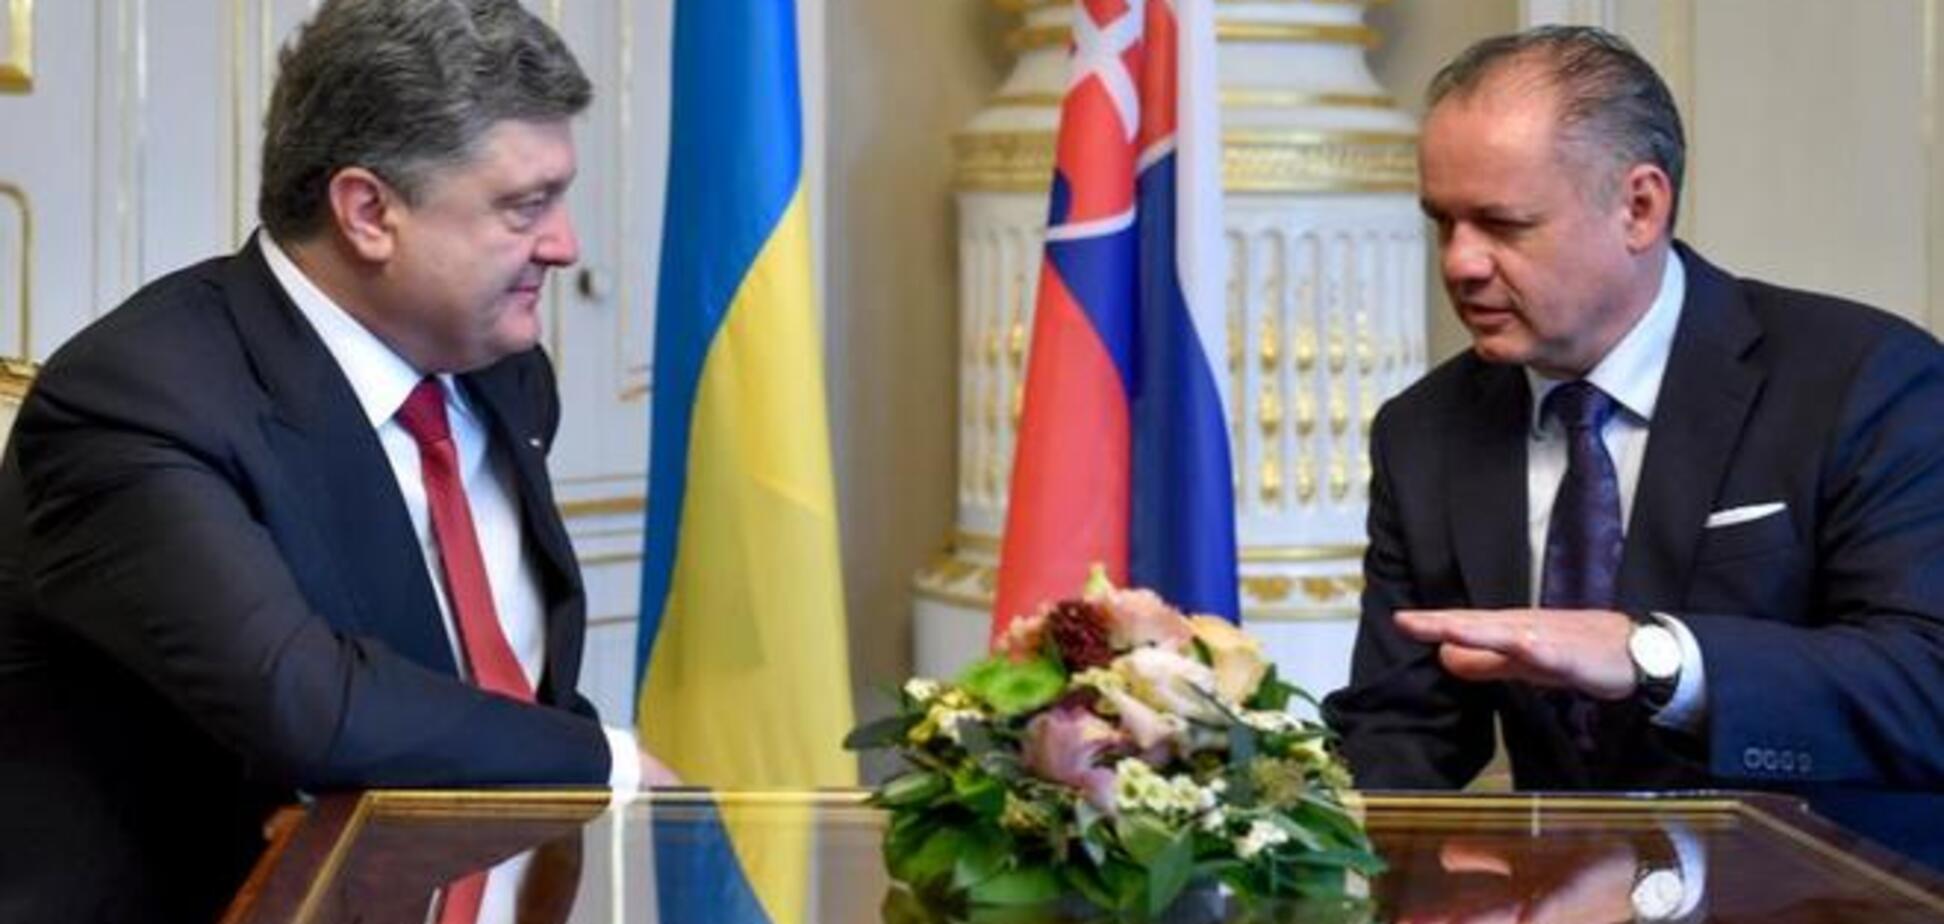 Порошенко проводит встречу с президентом Словакии в Братиславе